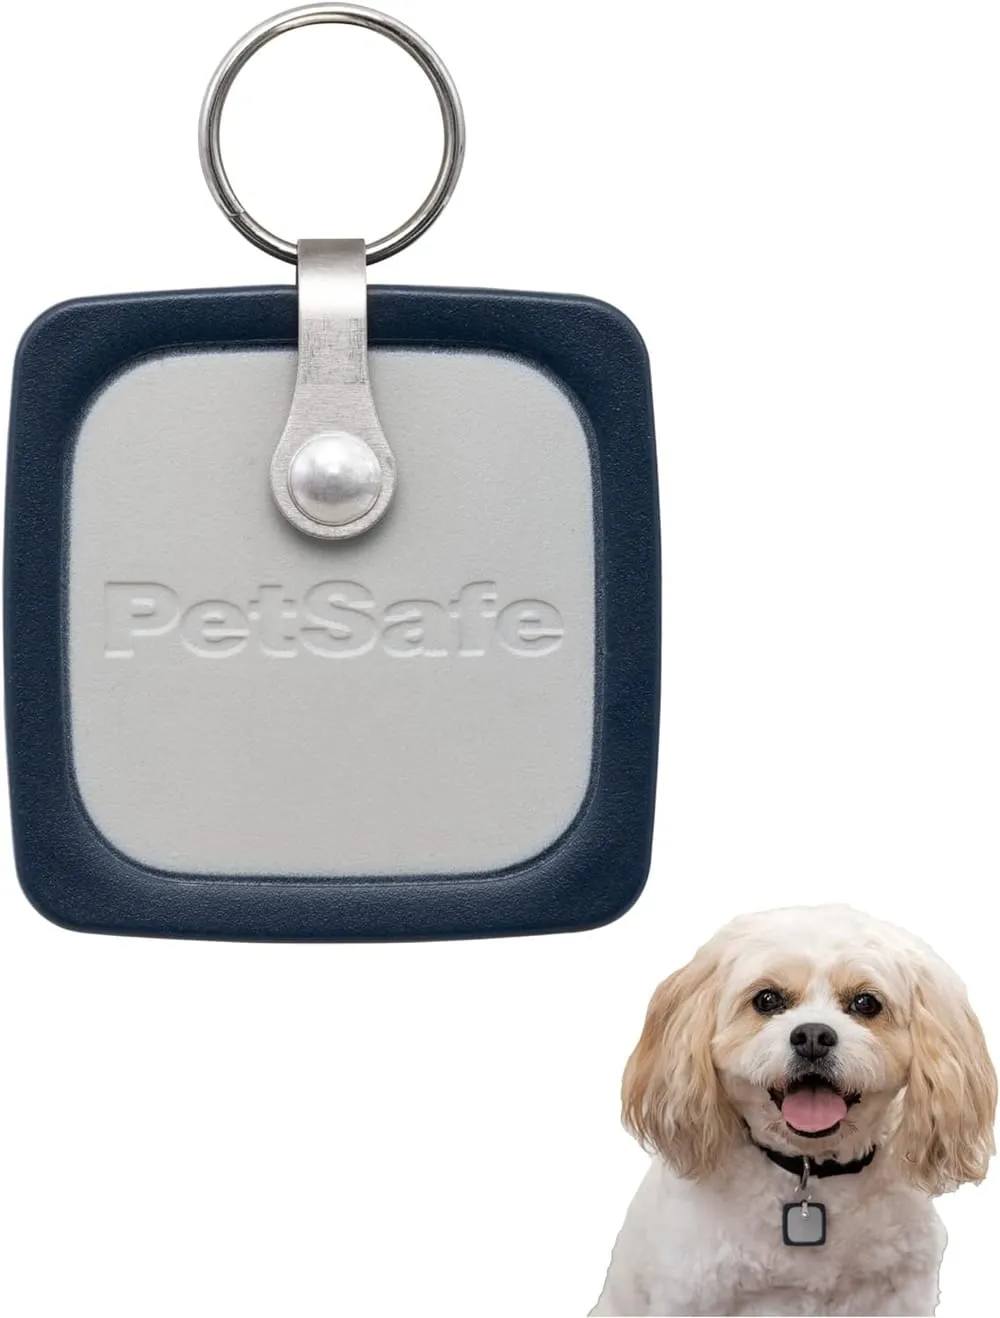 PetSafe SmartDoor Connected Pet Door Key for Dogs and Cats